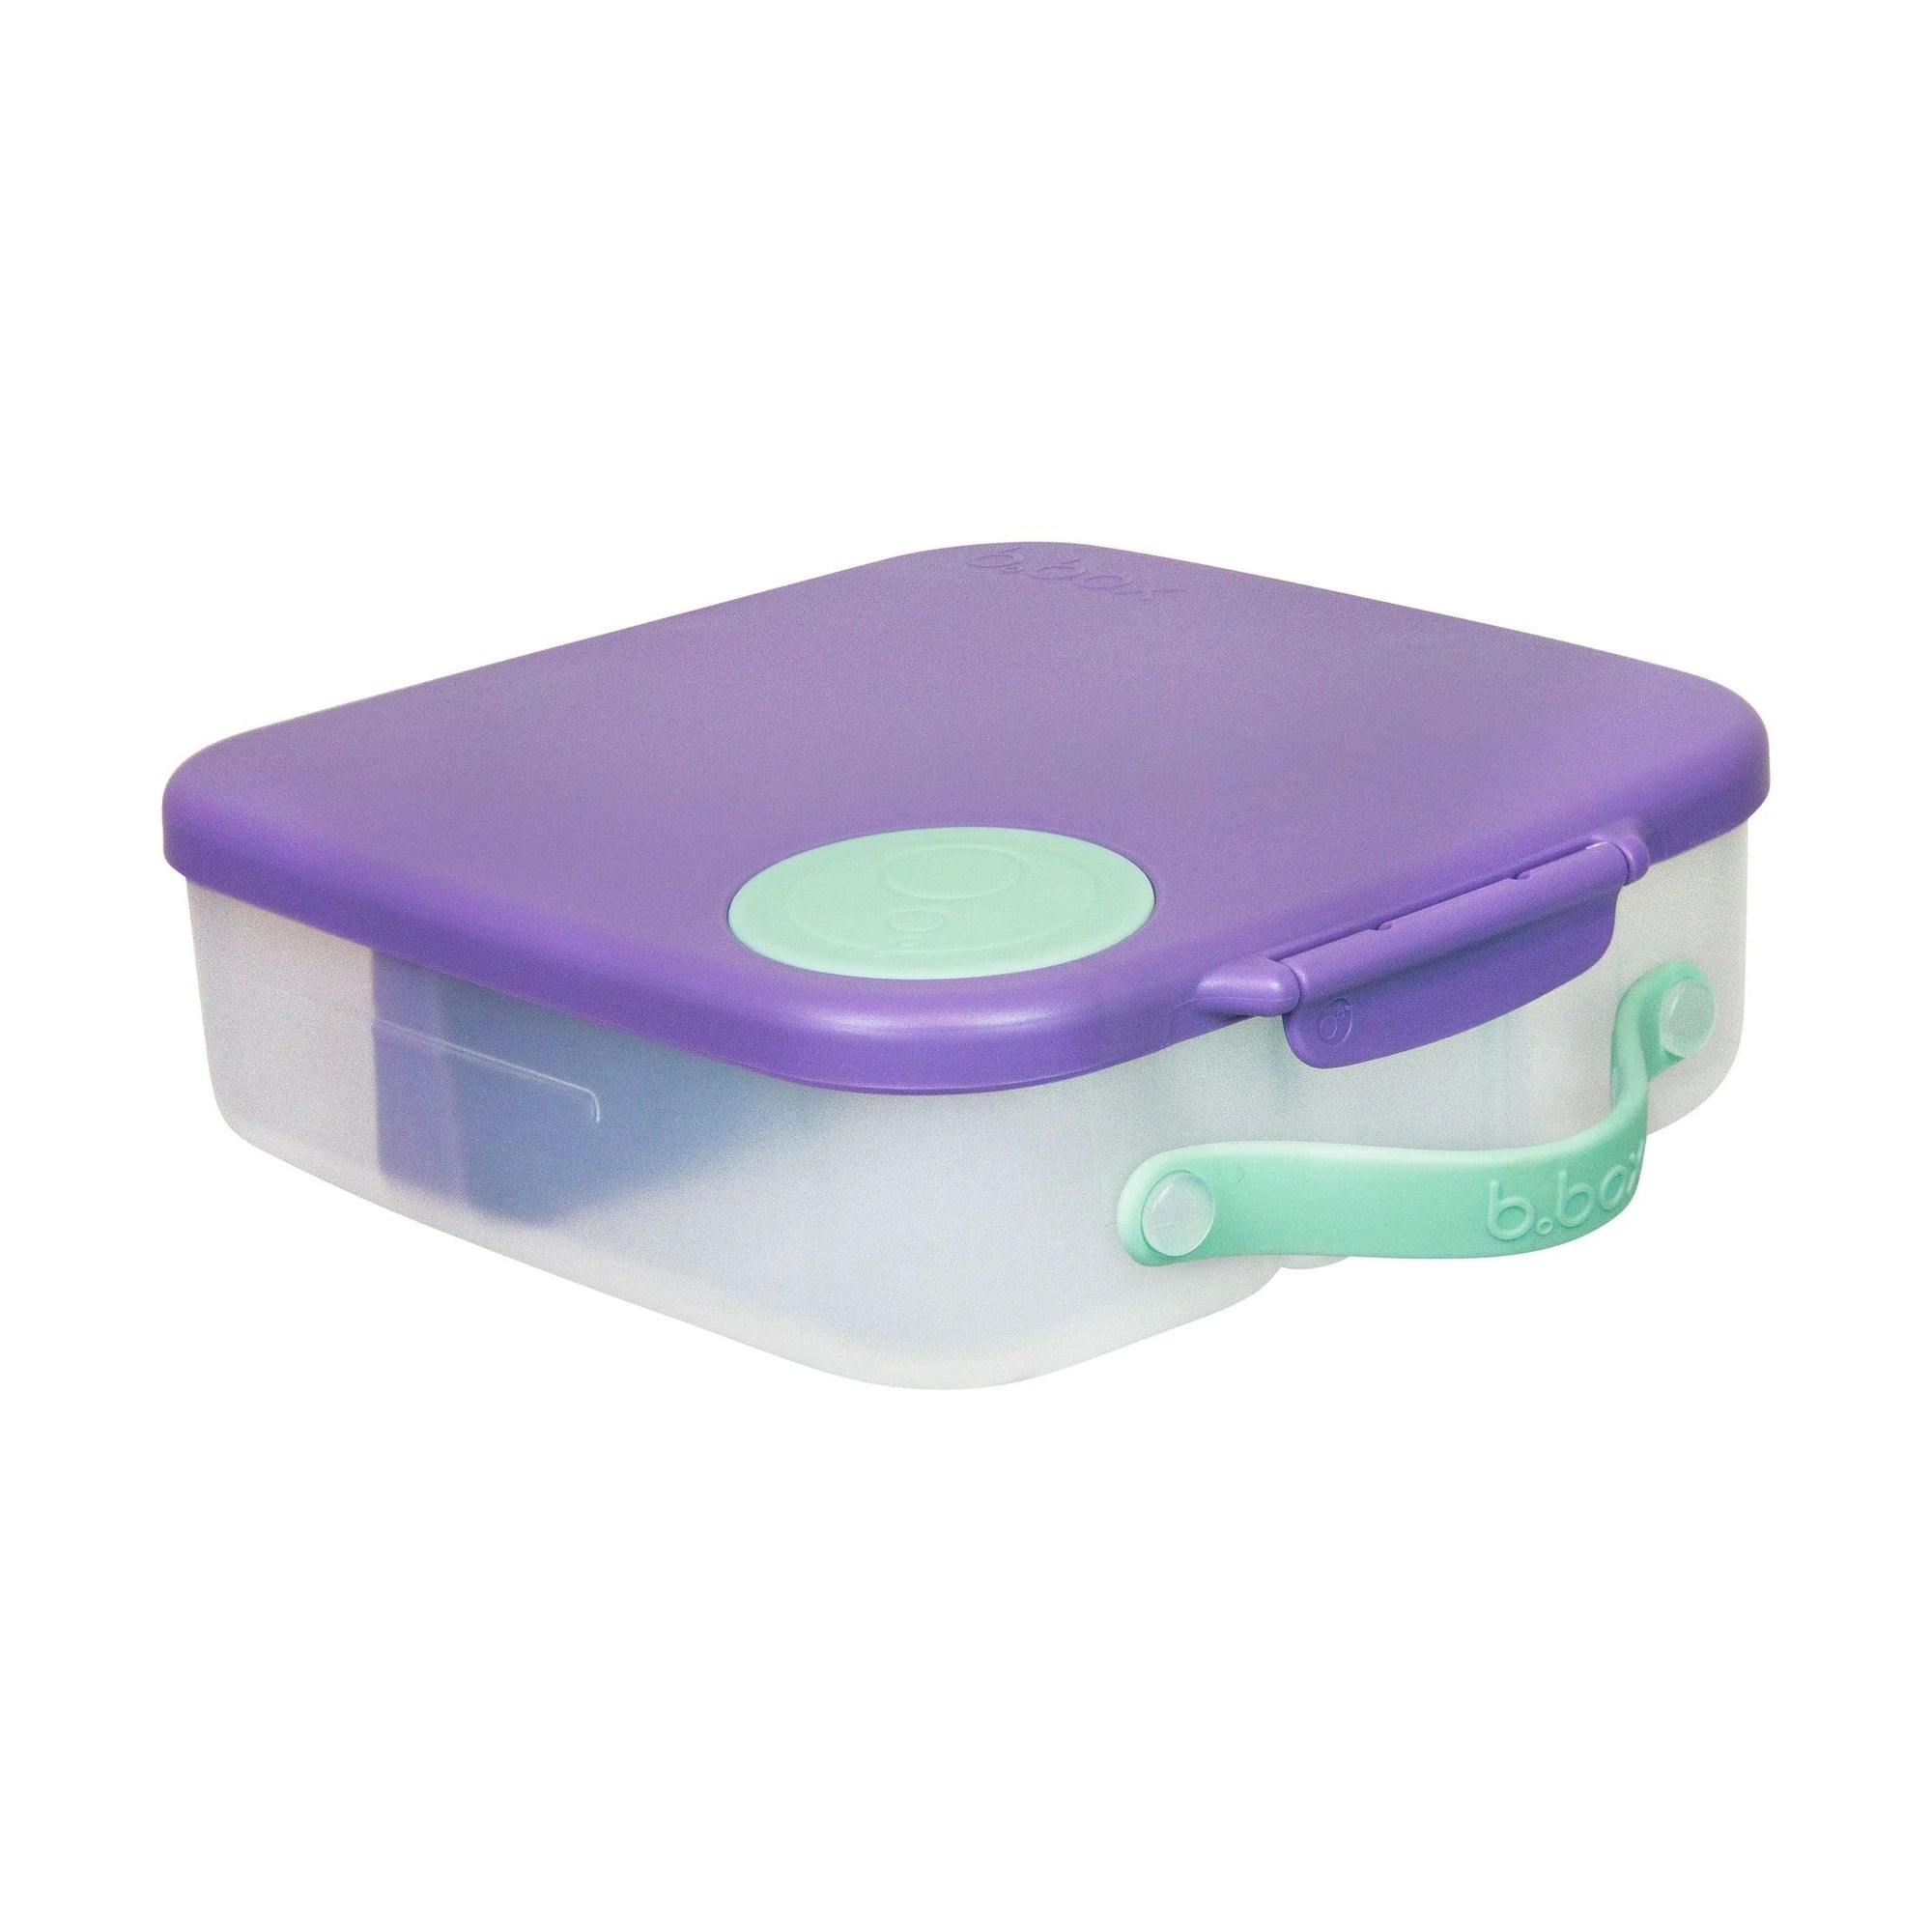 Lilac Pop Lunchbox by B.Box  Edit alt text